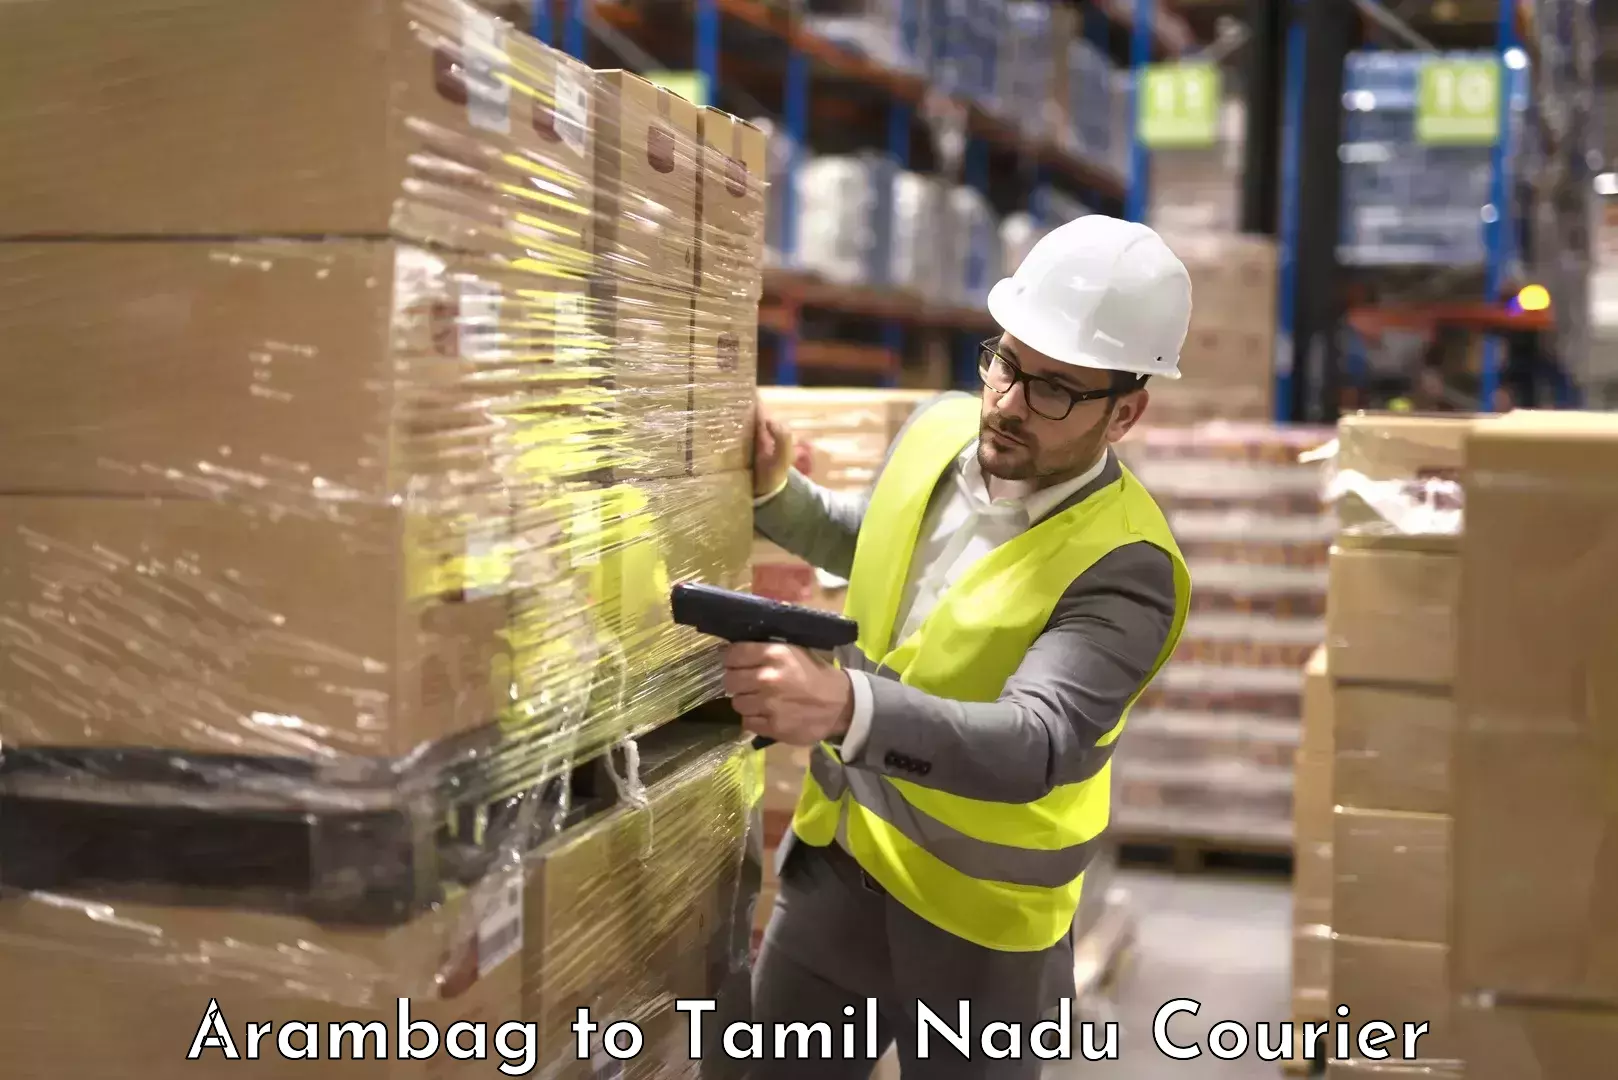 Baggage transport innovation Arambag to Tamil Nadu